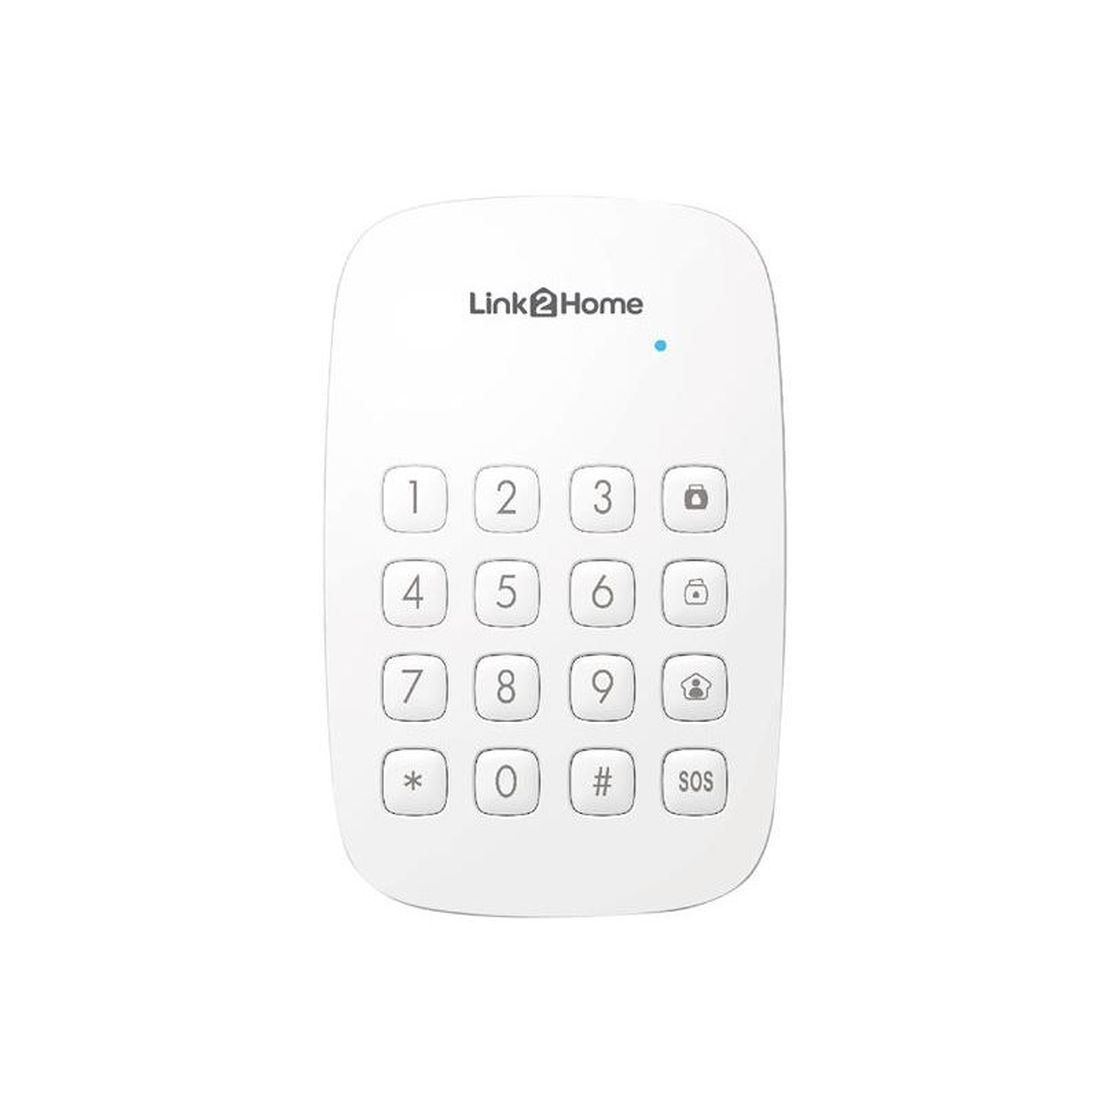 Link2Home Smart Alarm Keypad                